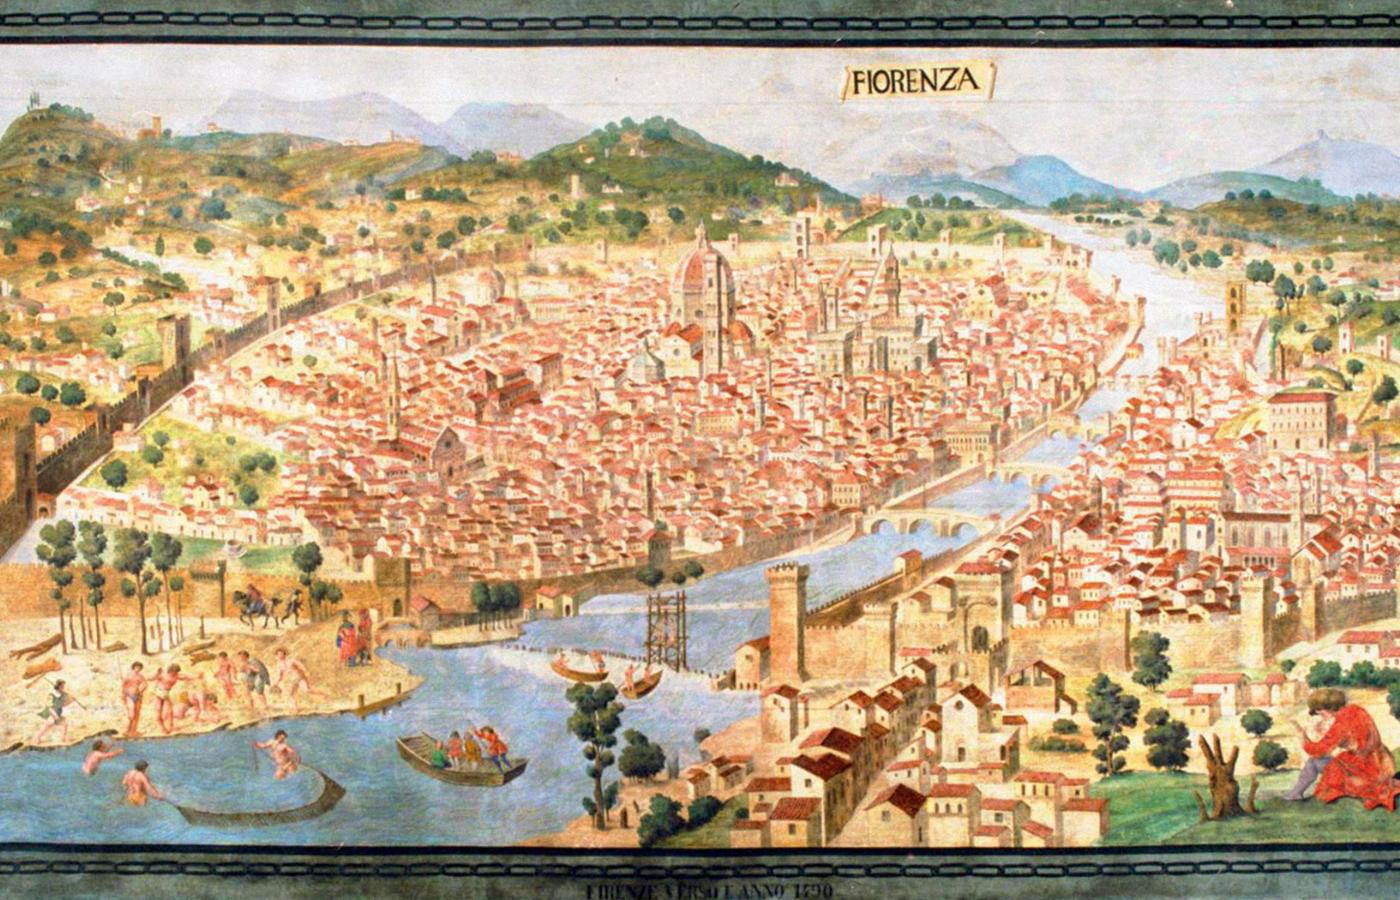 Widok Florencji, kopia zaginionego obrazu nieznanego artysty z ok. 1490 r. wykonana w XIX w.